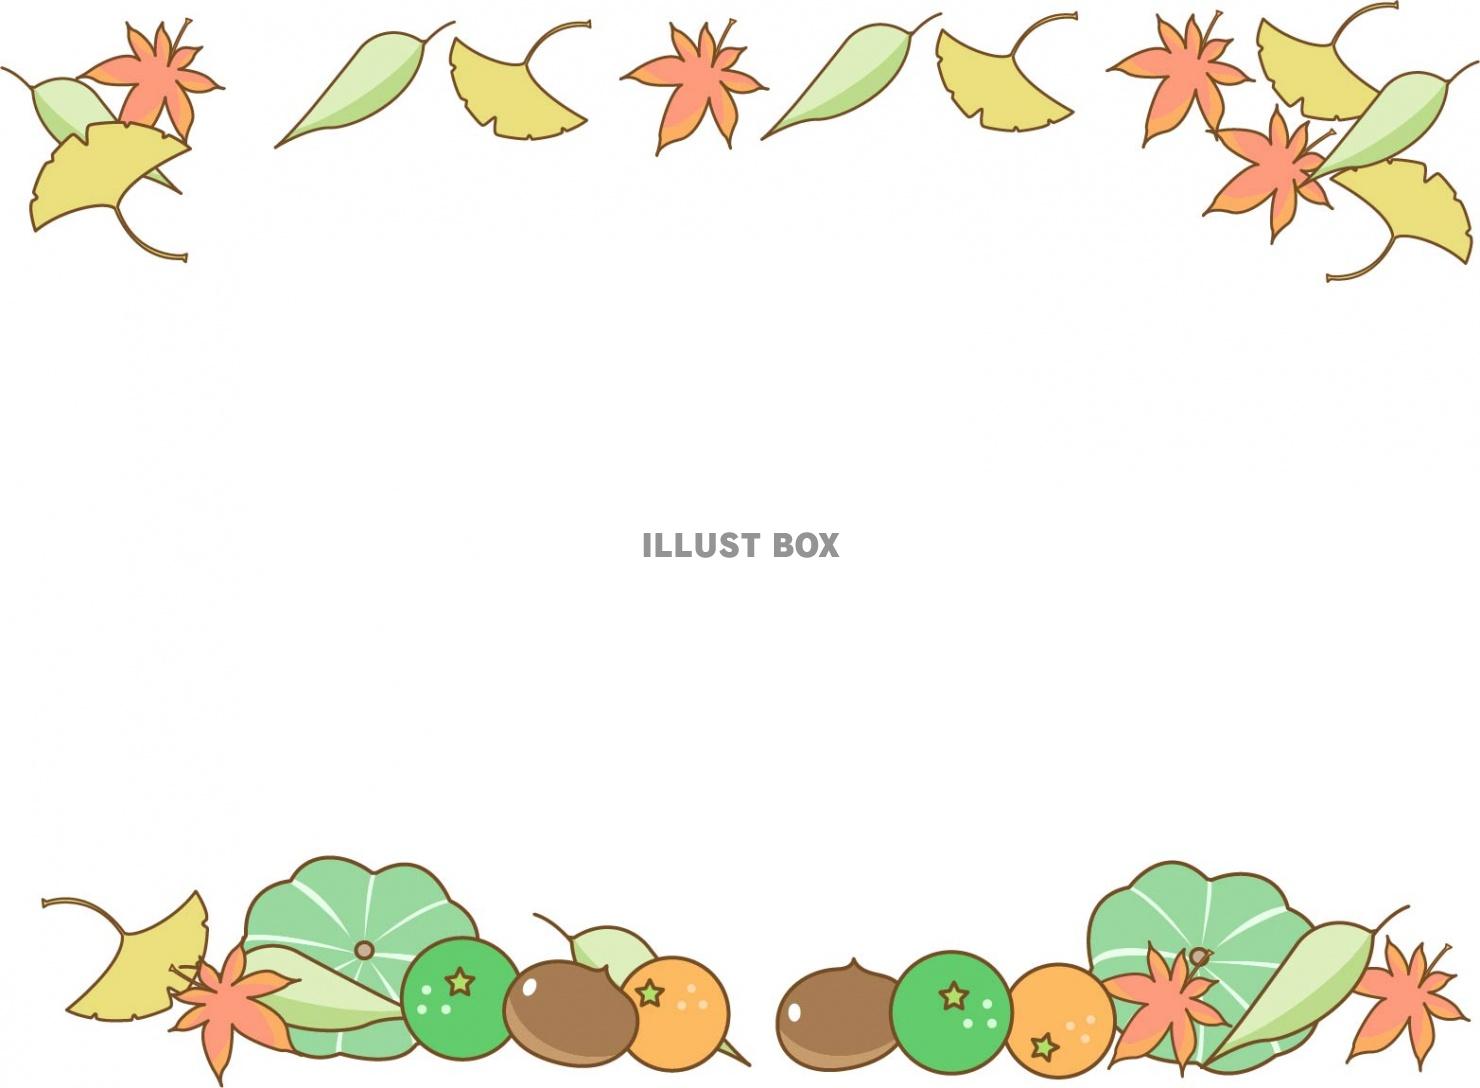 秋のイメージのフレーム・枠素材、落ち葉と秋の味覚のデザイン